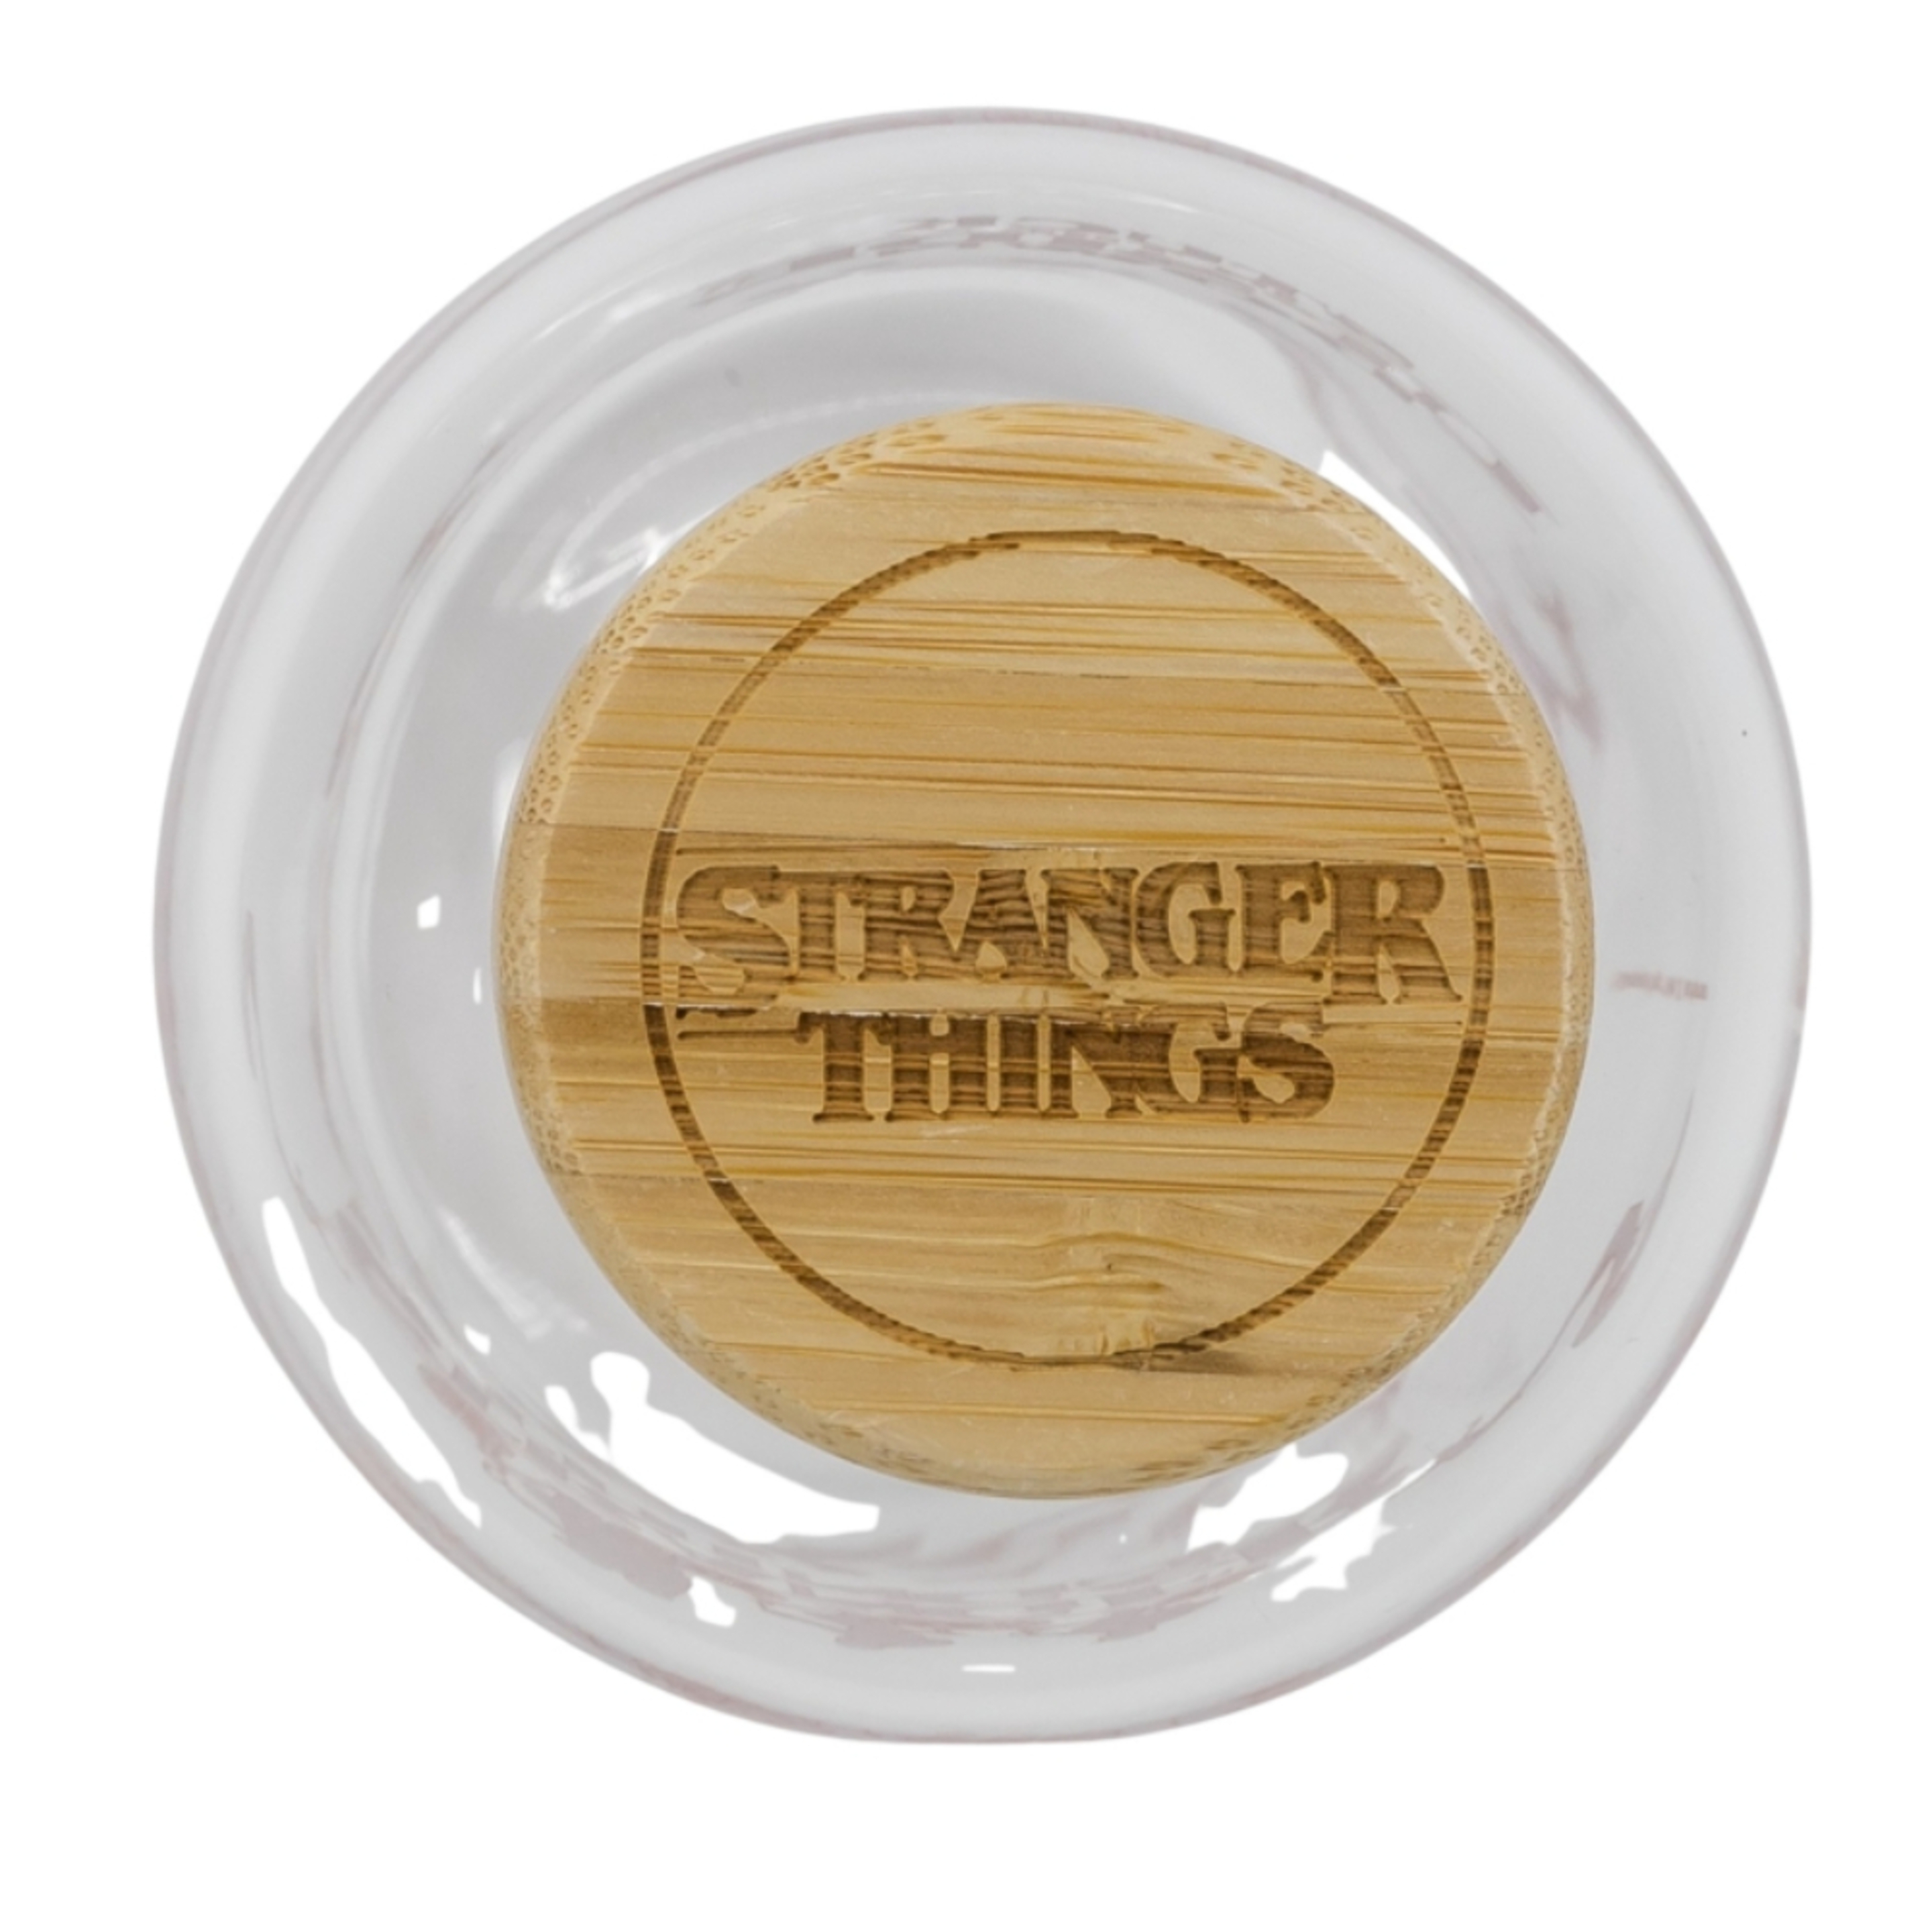 Botella Stranger Things 71217